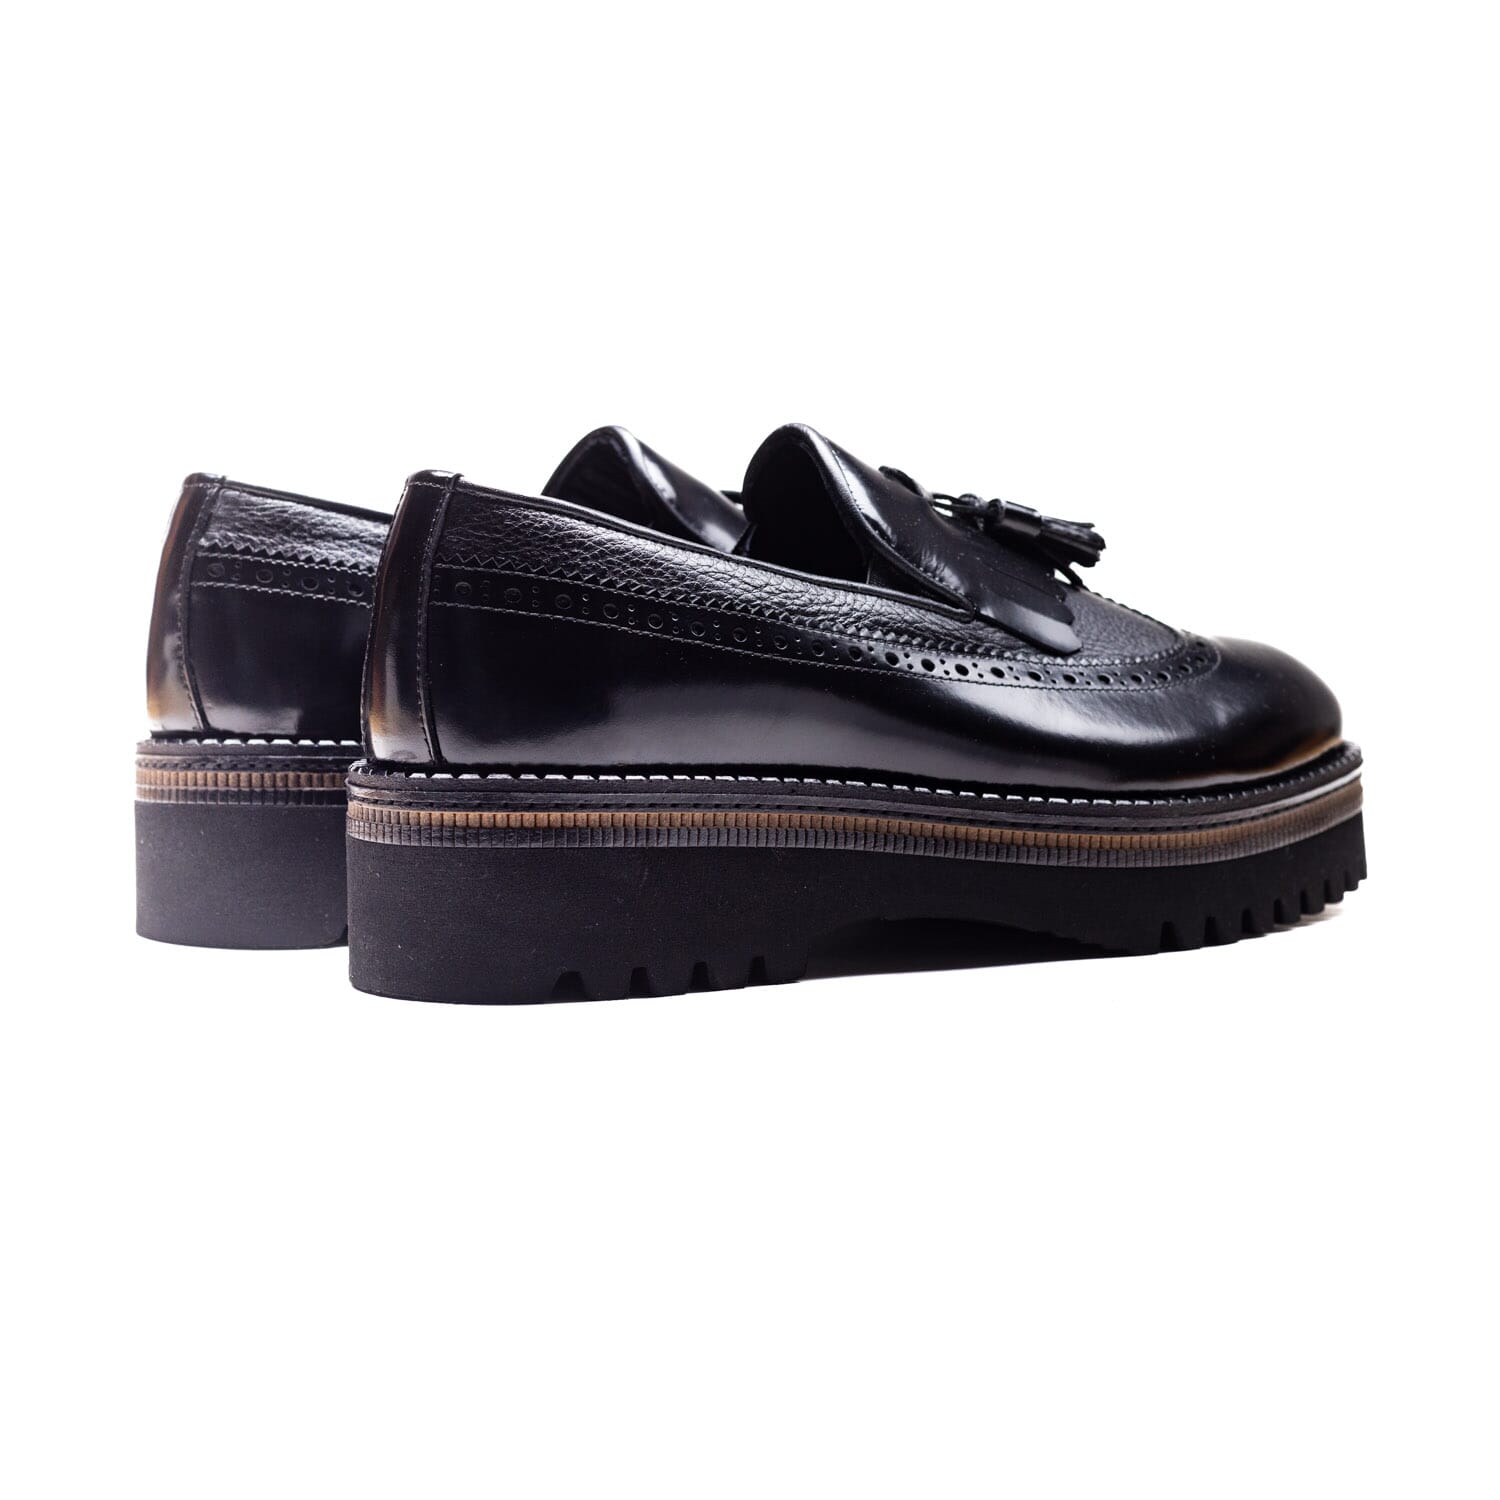 Bulletti – 66730 – Black – Perocili Shoes